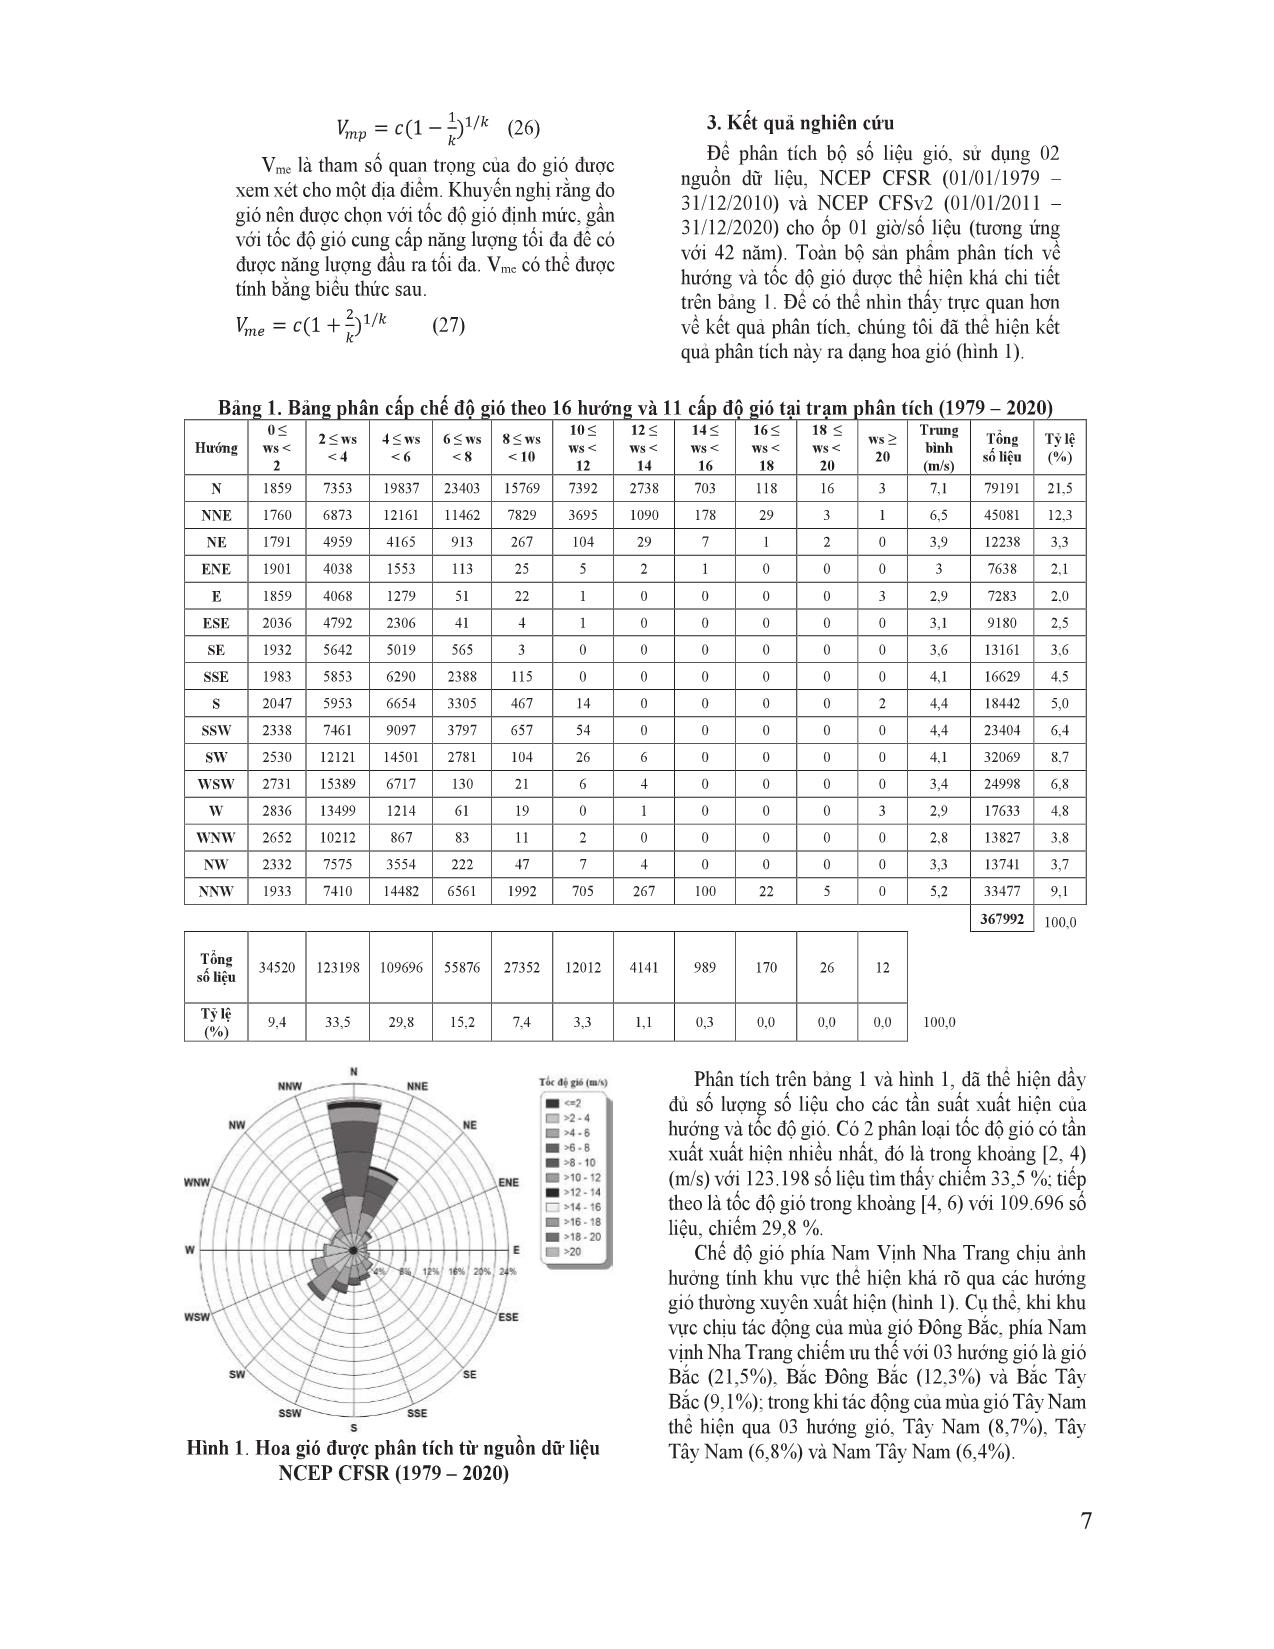 Ước lượng các tham số phân bố Weibull cho nghiên cứu chế độ gió phía Nam vịnh Nha Trang trang 5